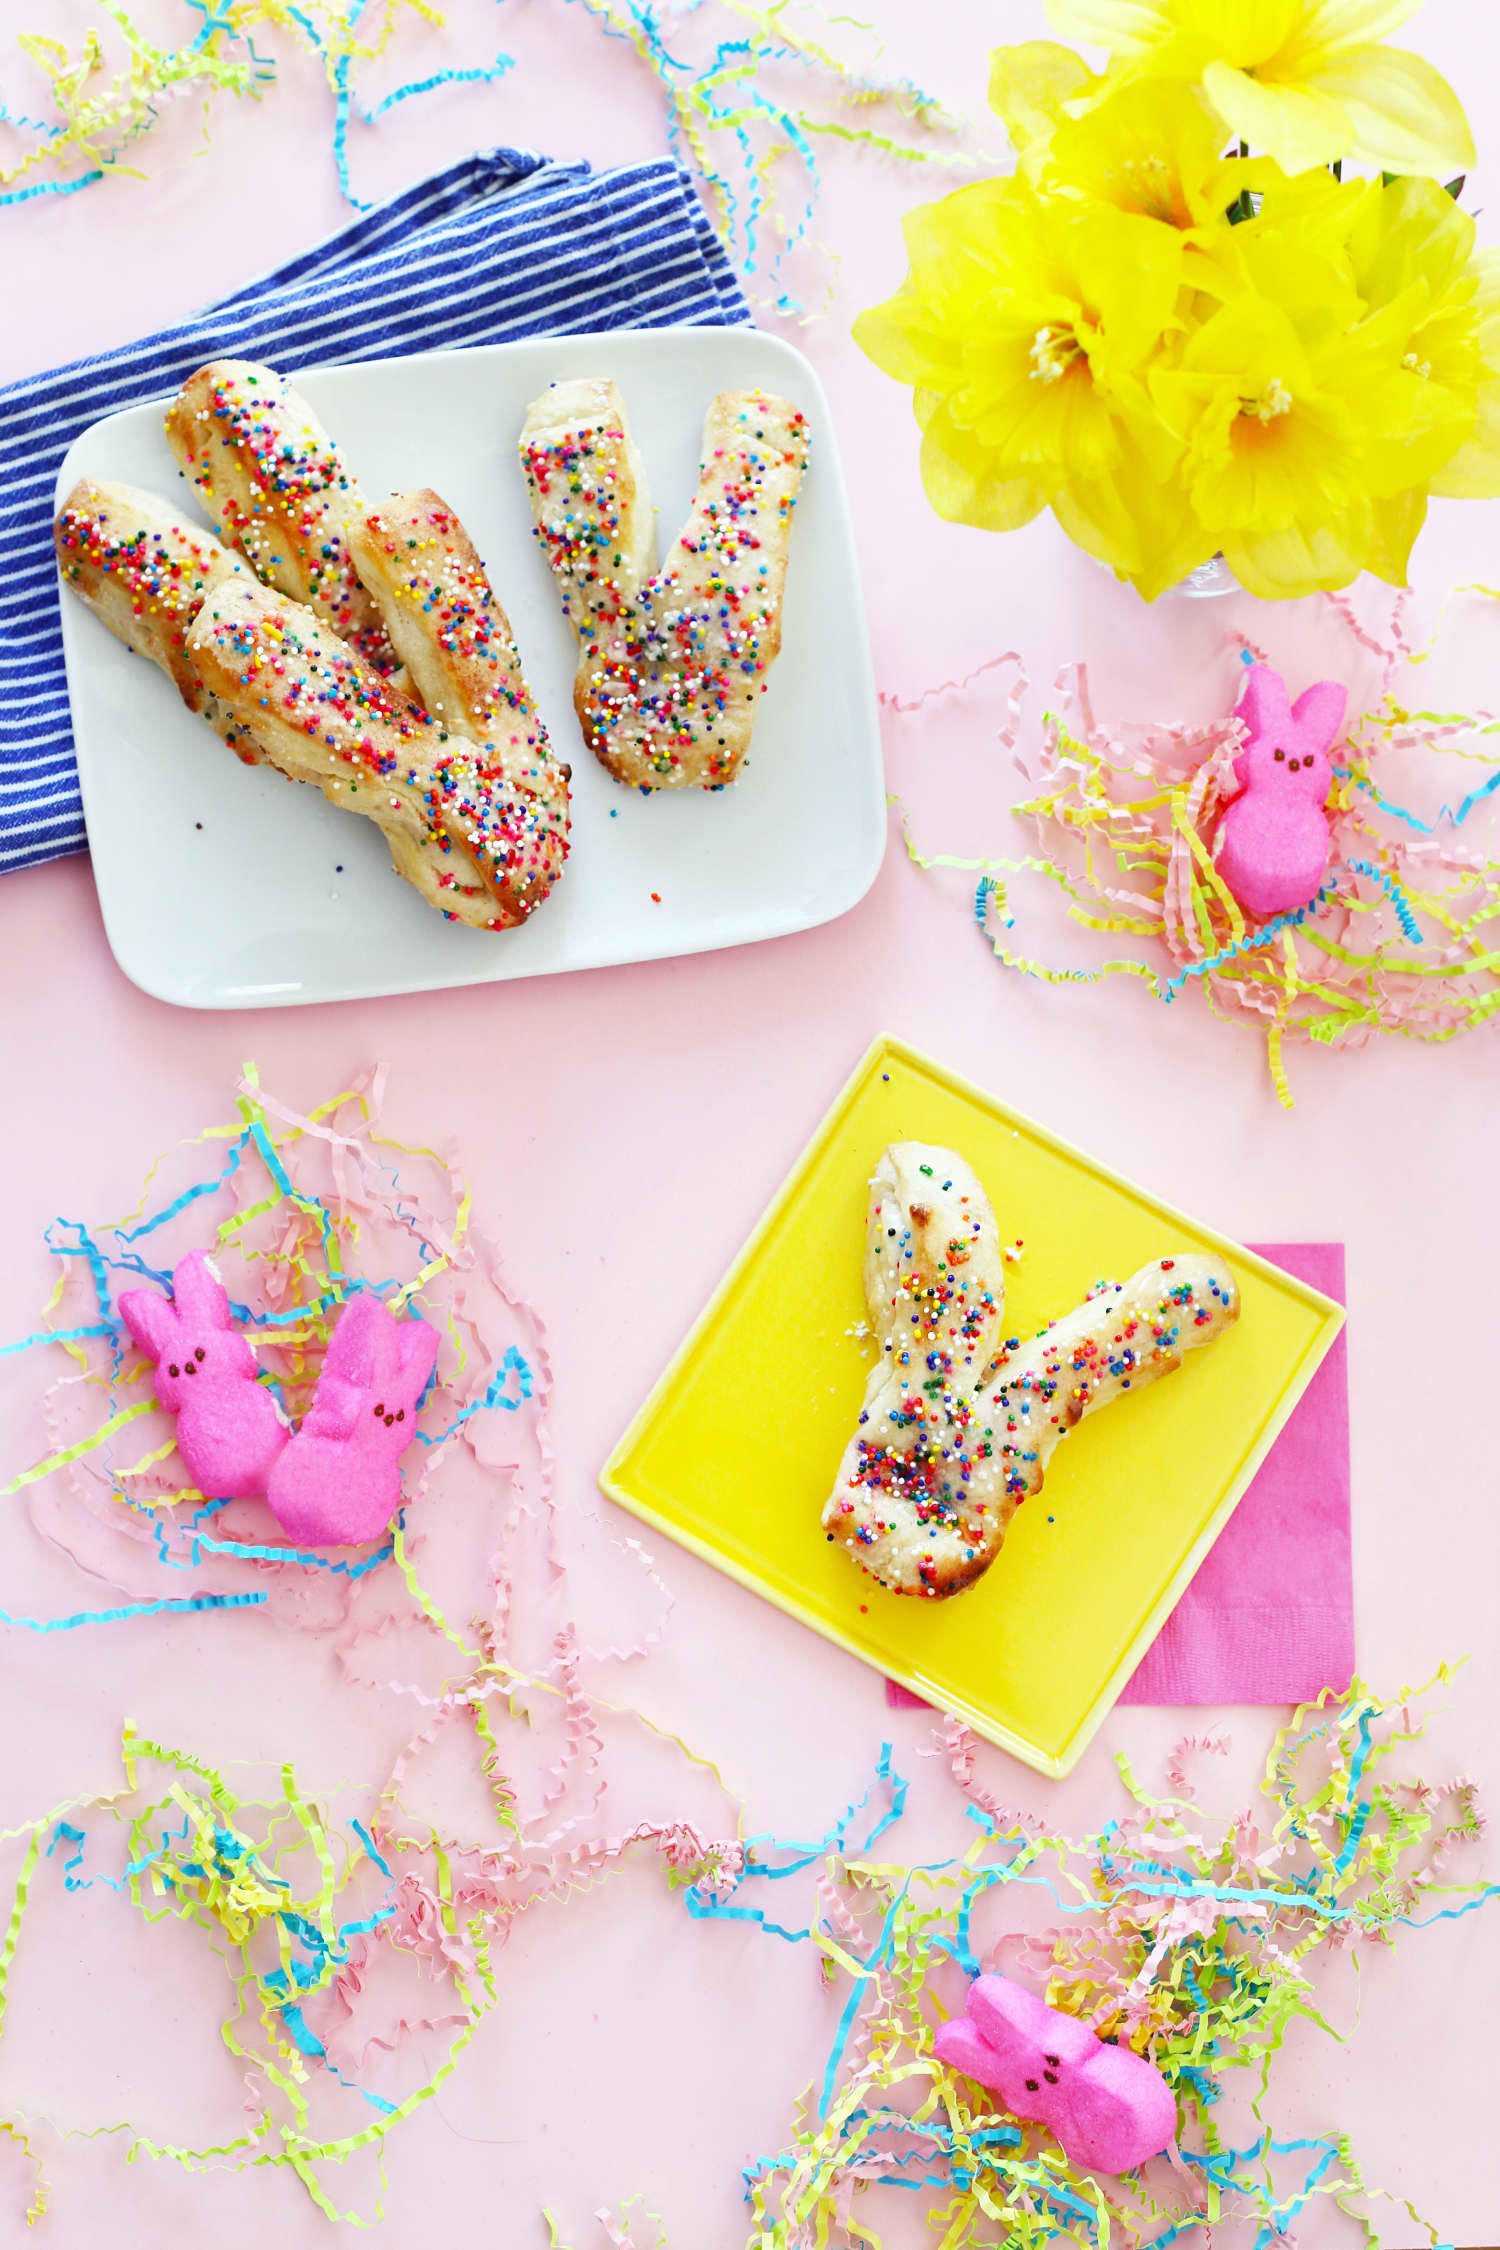 How To Make Confetti Cake Bunny Bread